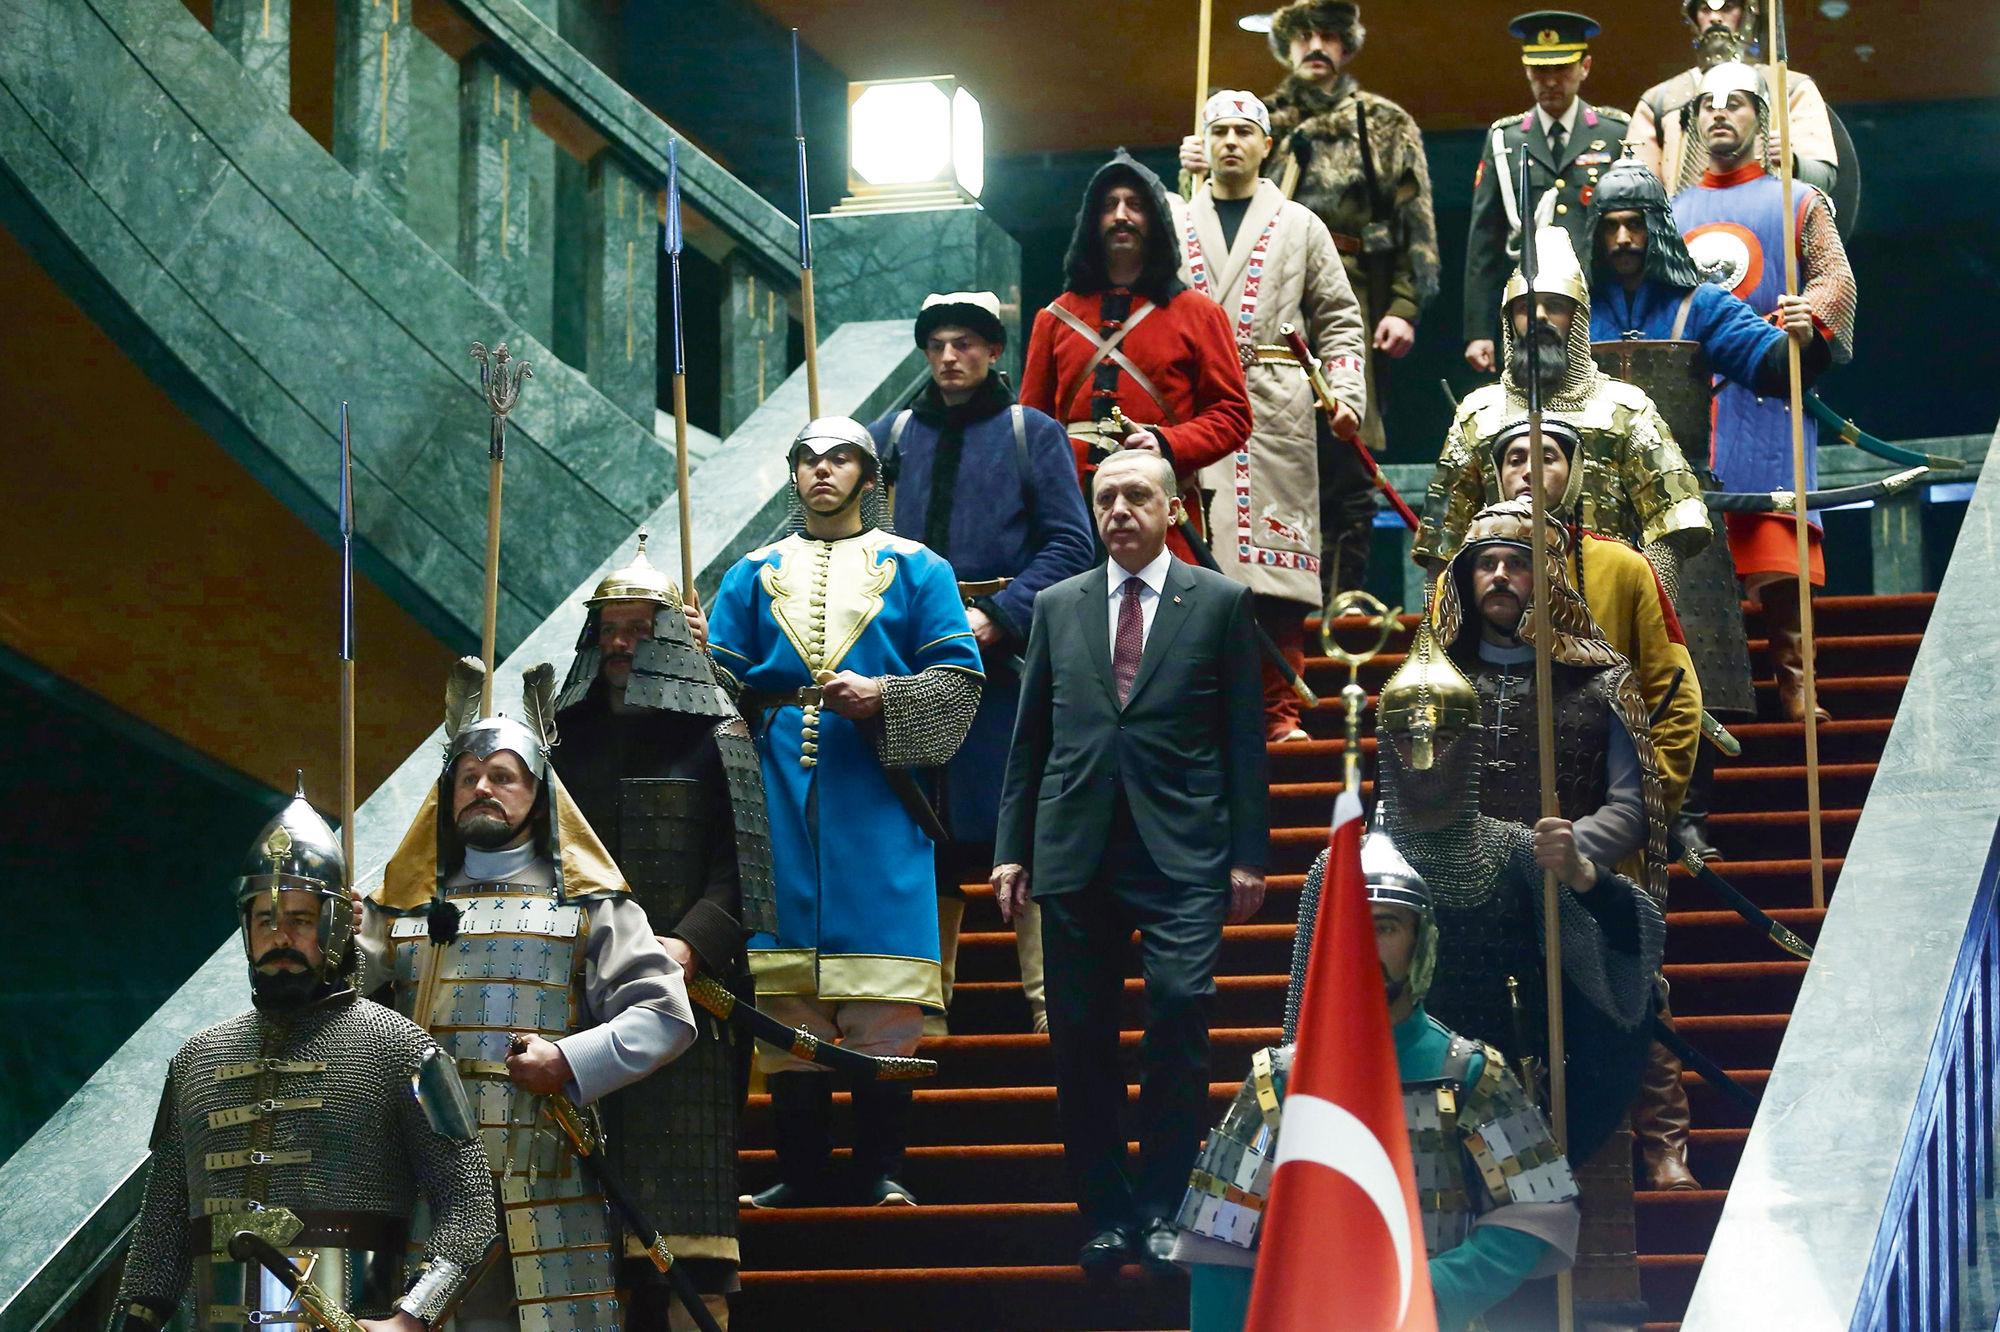 传统土耳其帽子的人 库存照片. 图片 包括有 阿拉伯人, 回教, 红色, 菲斯, 纵向, 方式, 伊斯兰 - 31601252